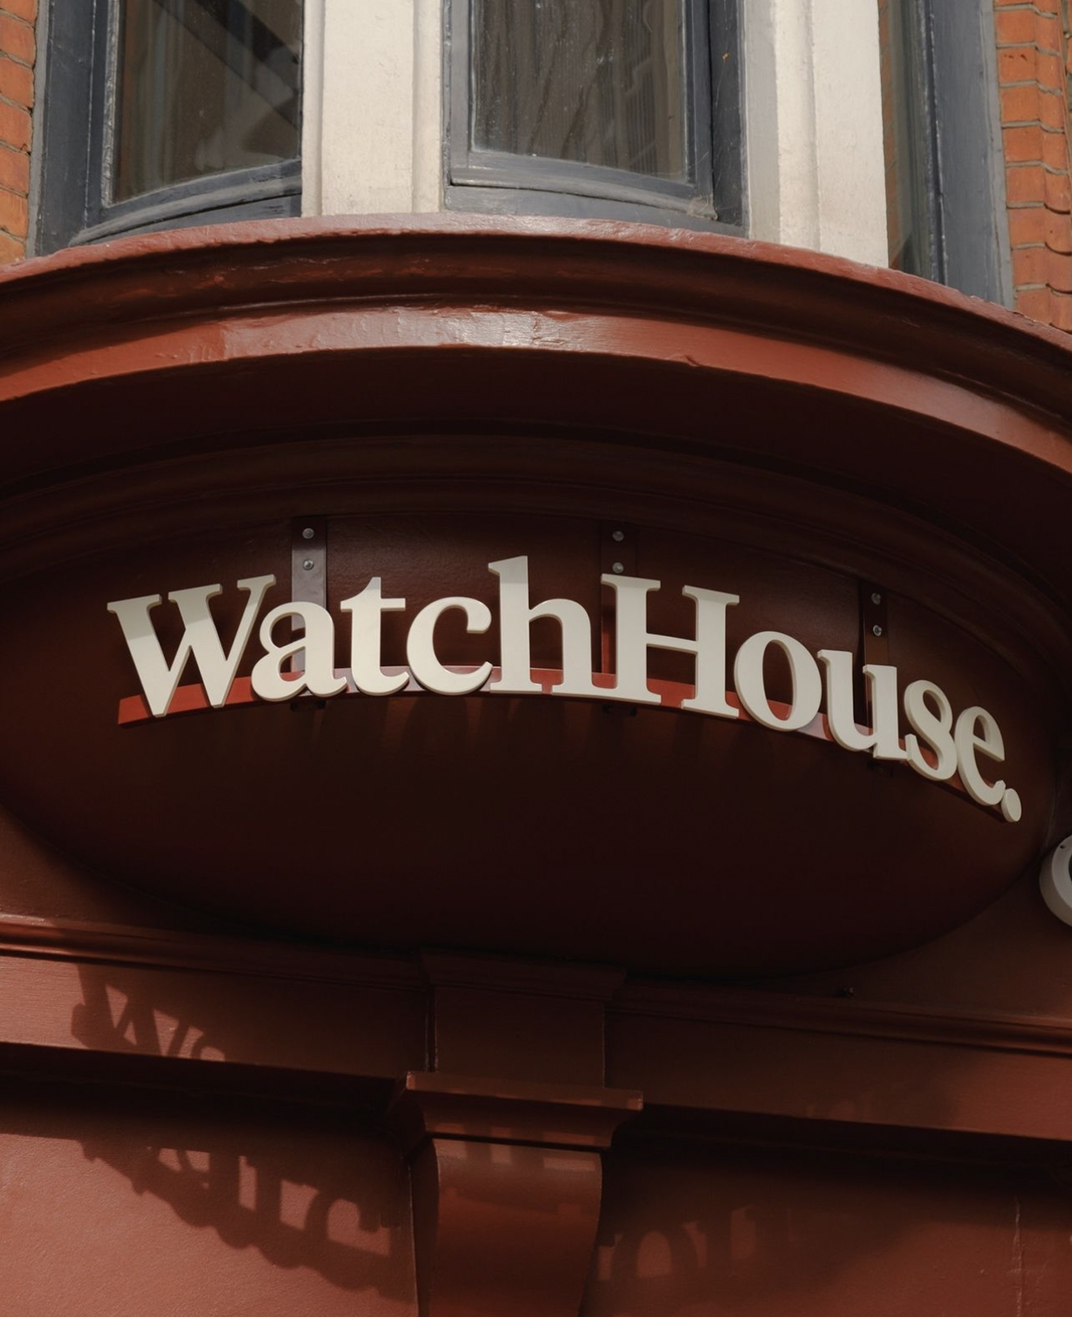 花园市场咖啡店watchhouse 英国 深圳 上海 北京 广州 武汉 咖啡店 餐饮商业 logo设计 vi设计 空间设计